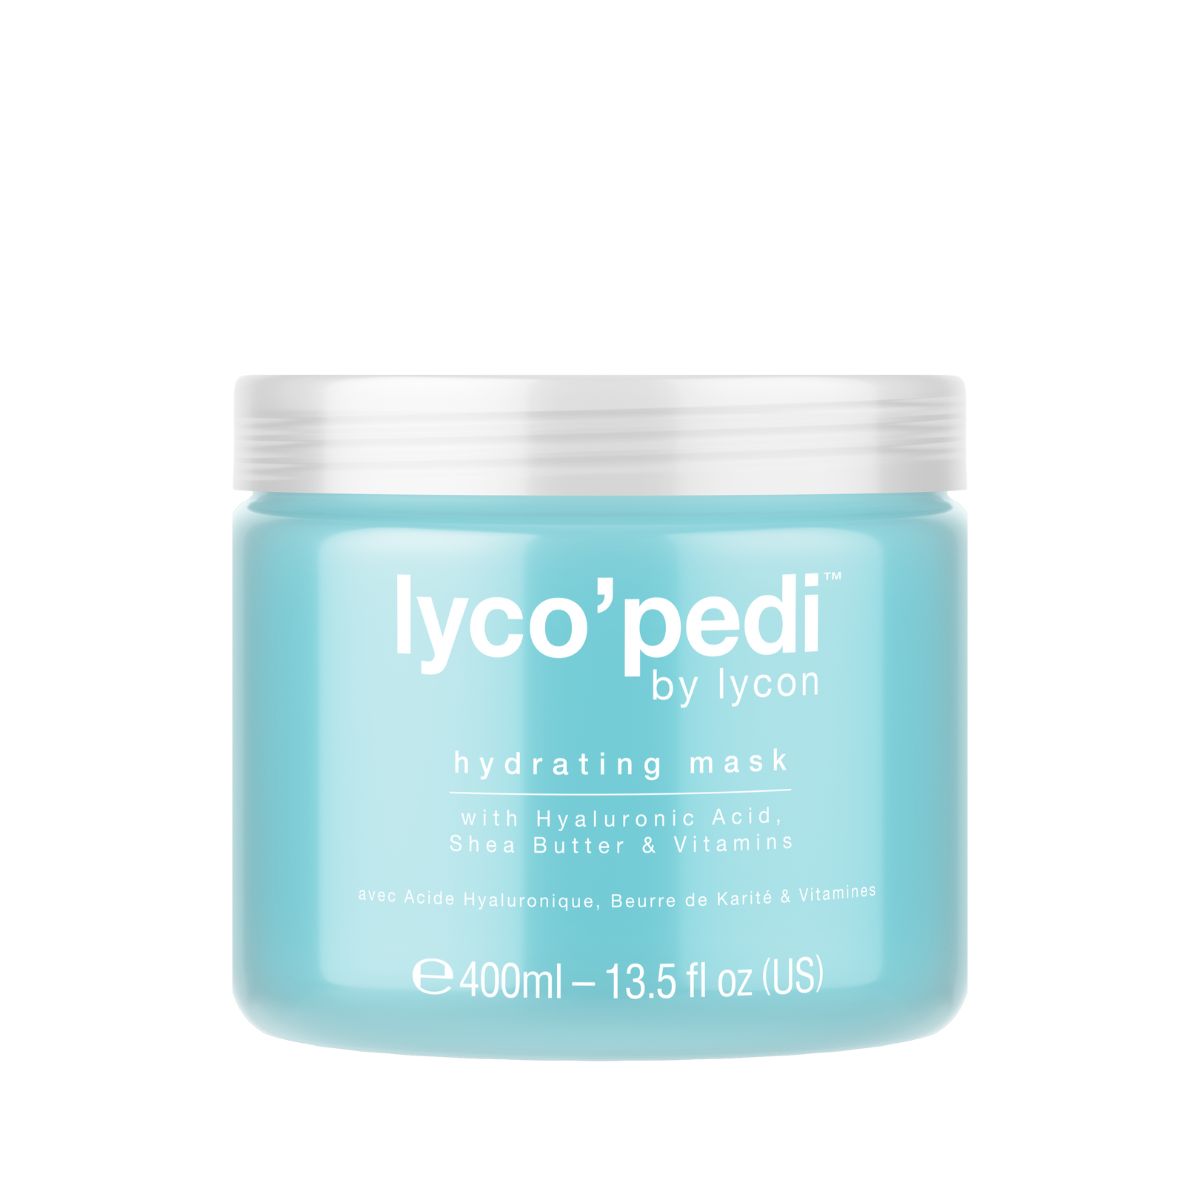 Lyco'Pedi Hydrating Mask - 400ml - Retail